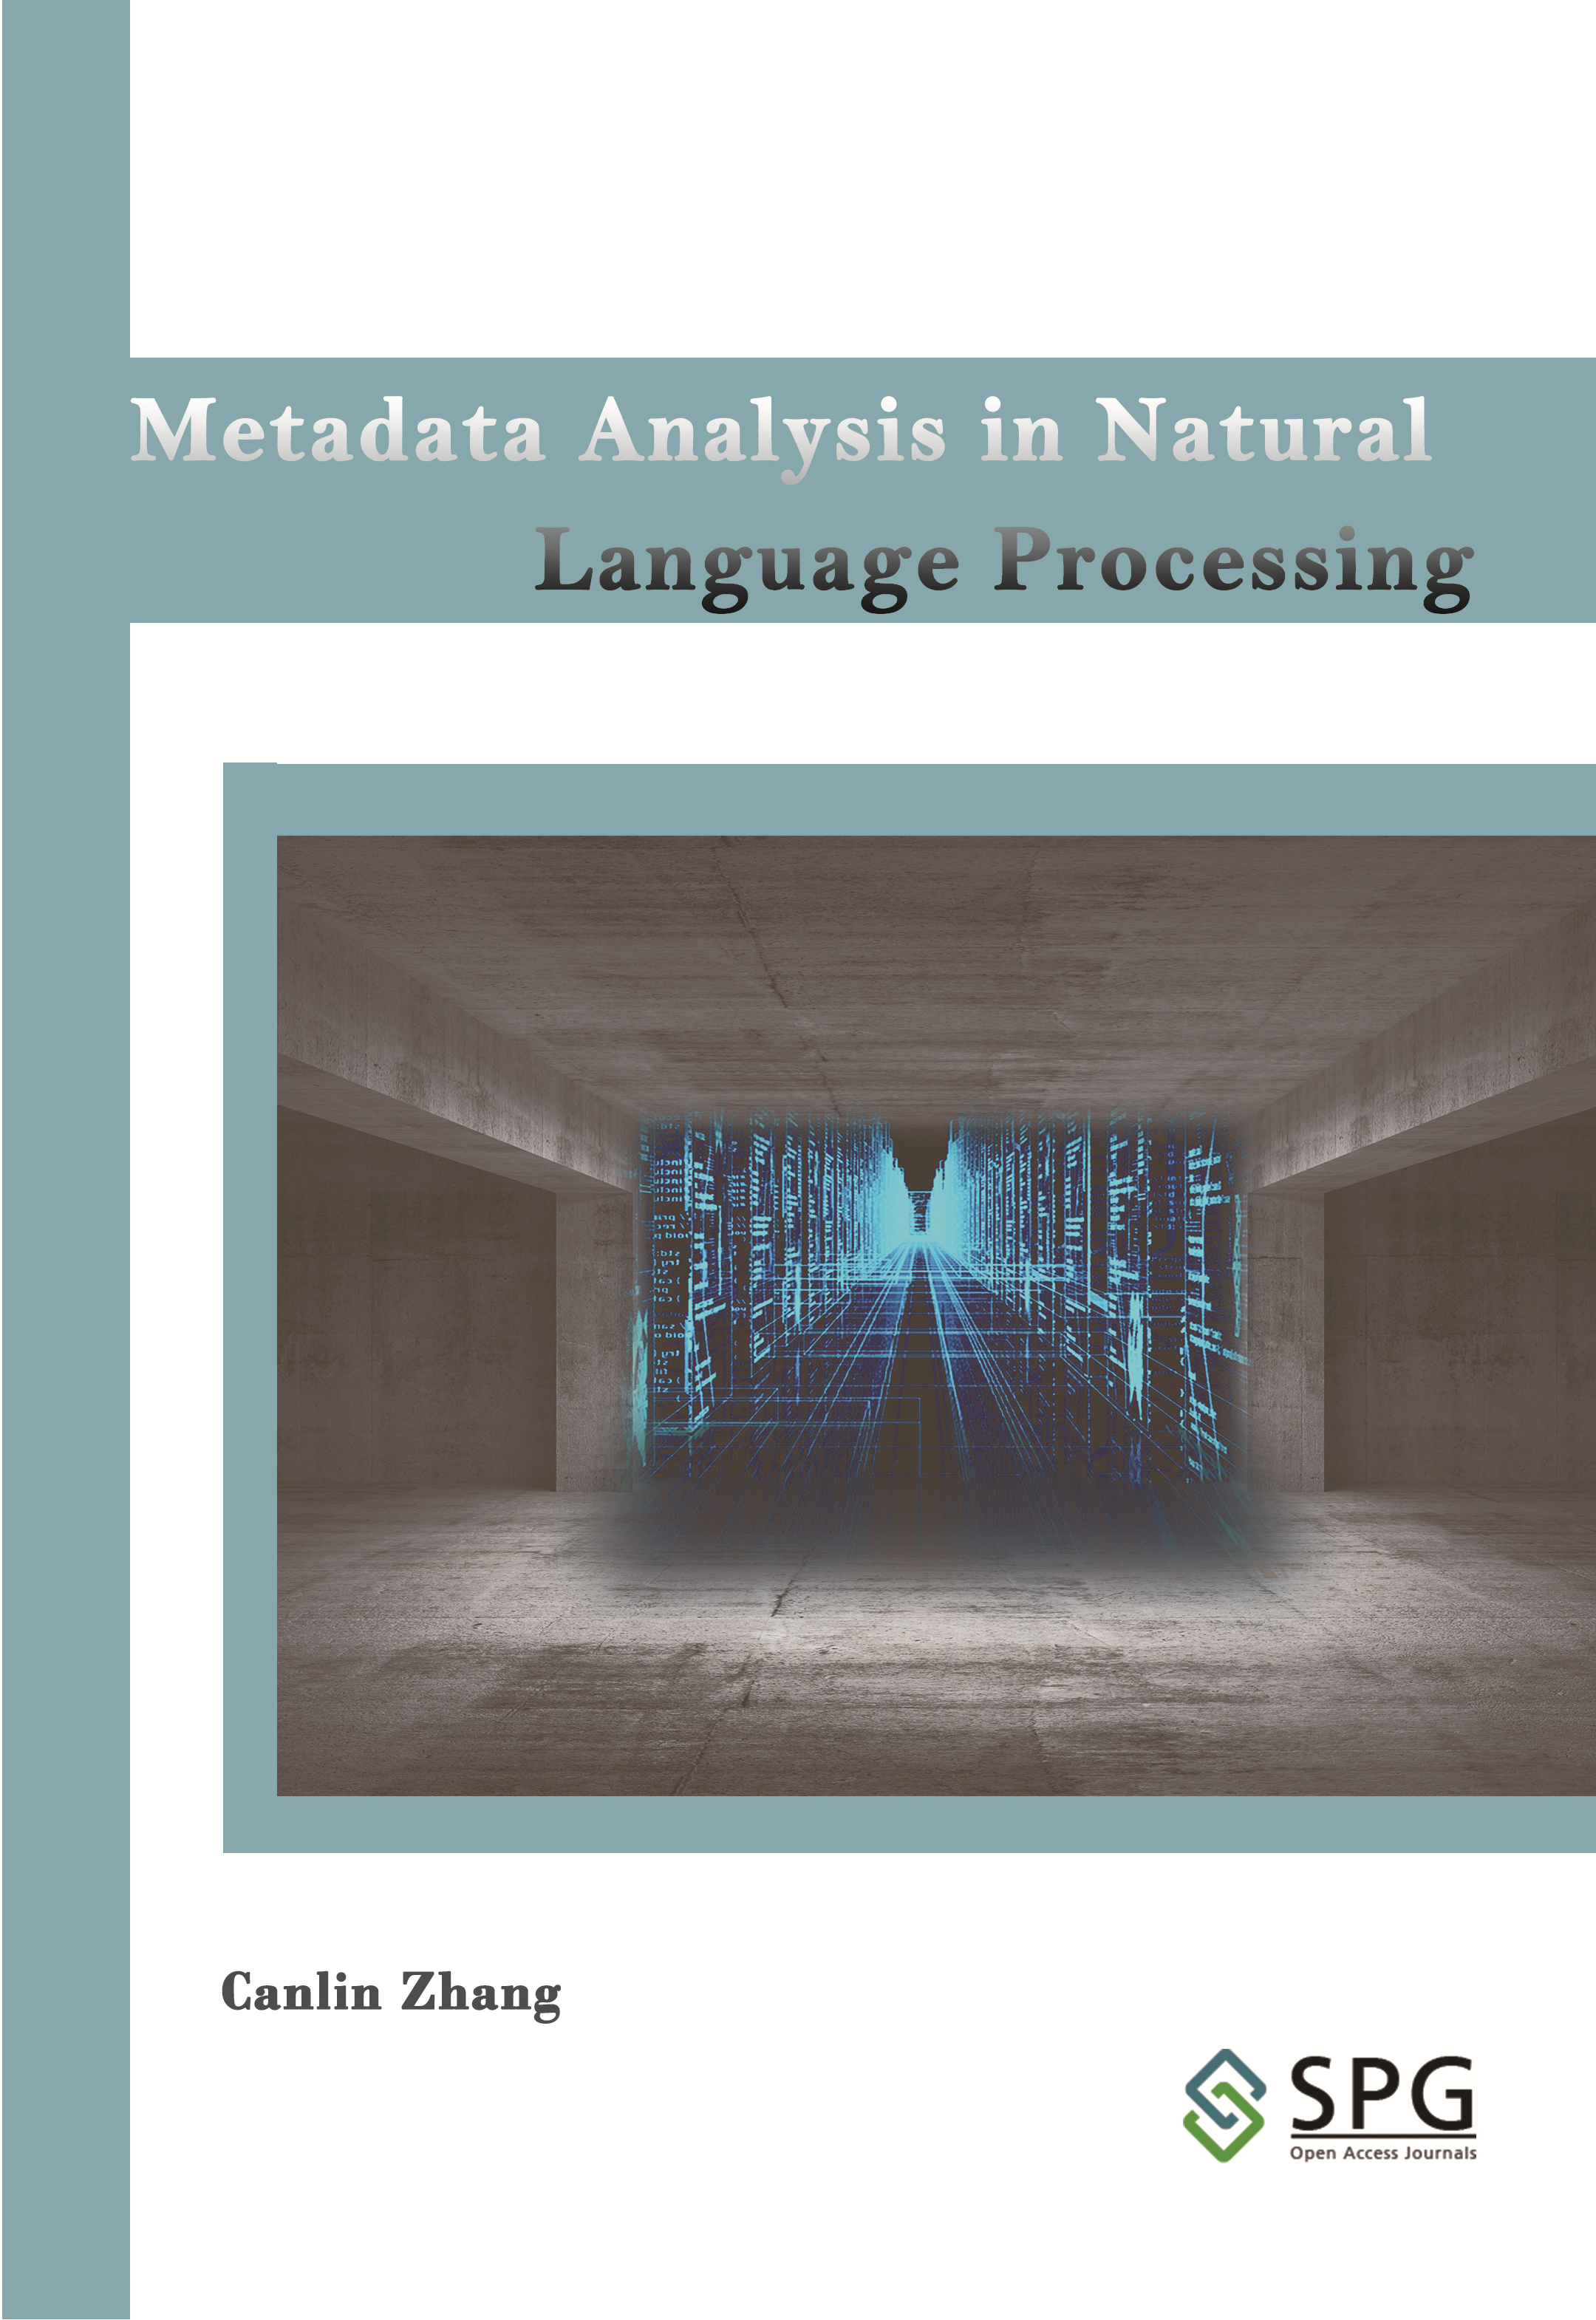 Metadata Analysis in Natural Language Processing | Scholar Publishing Group